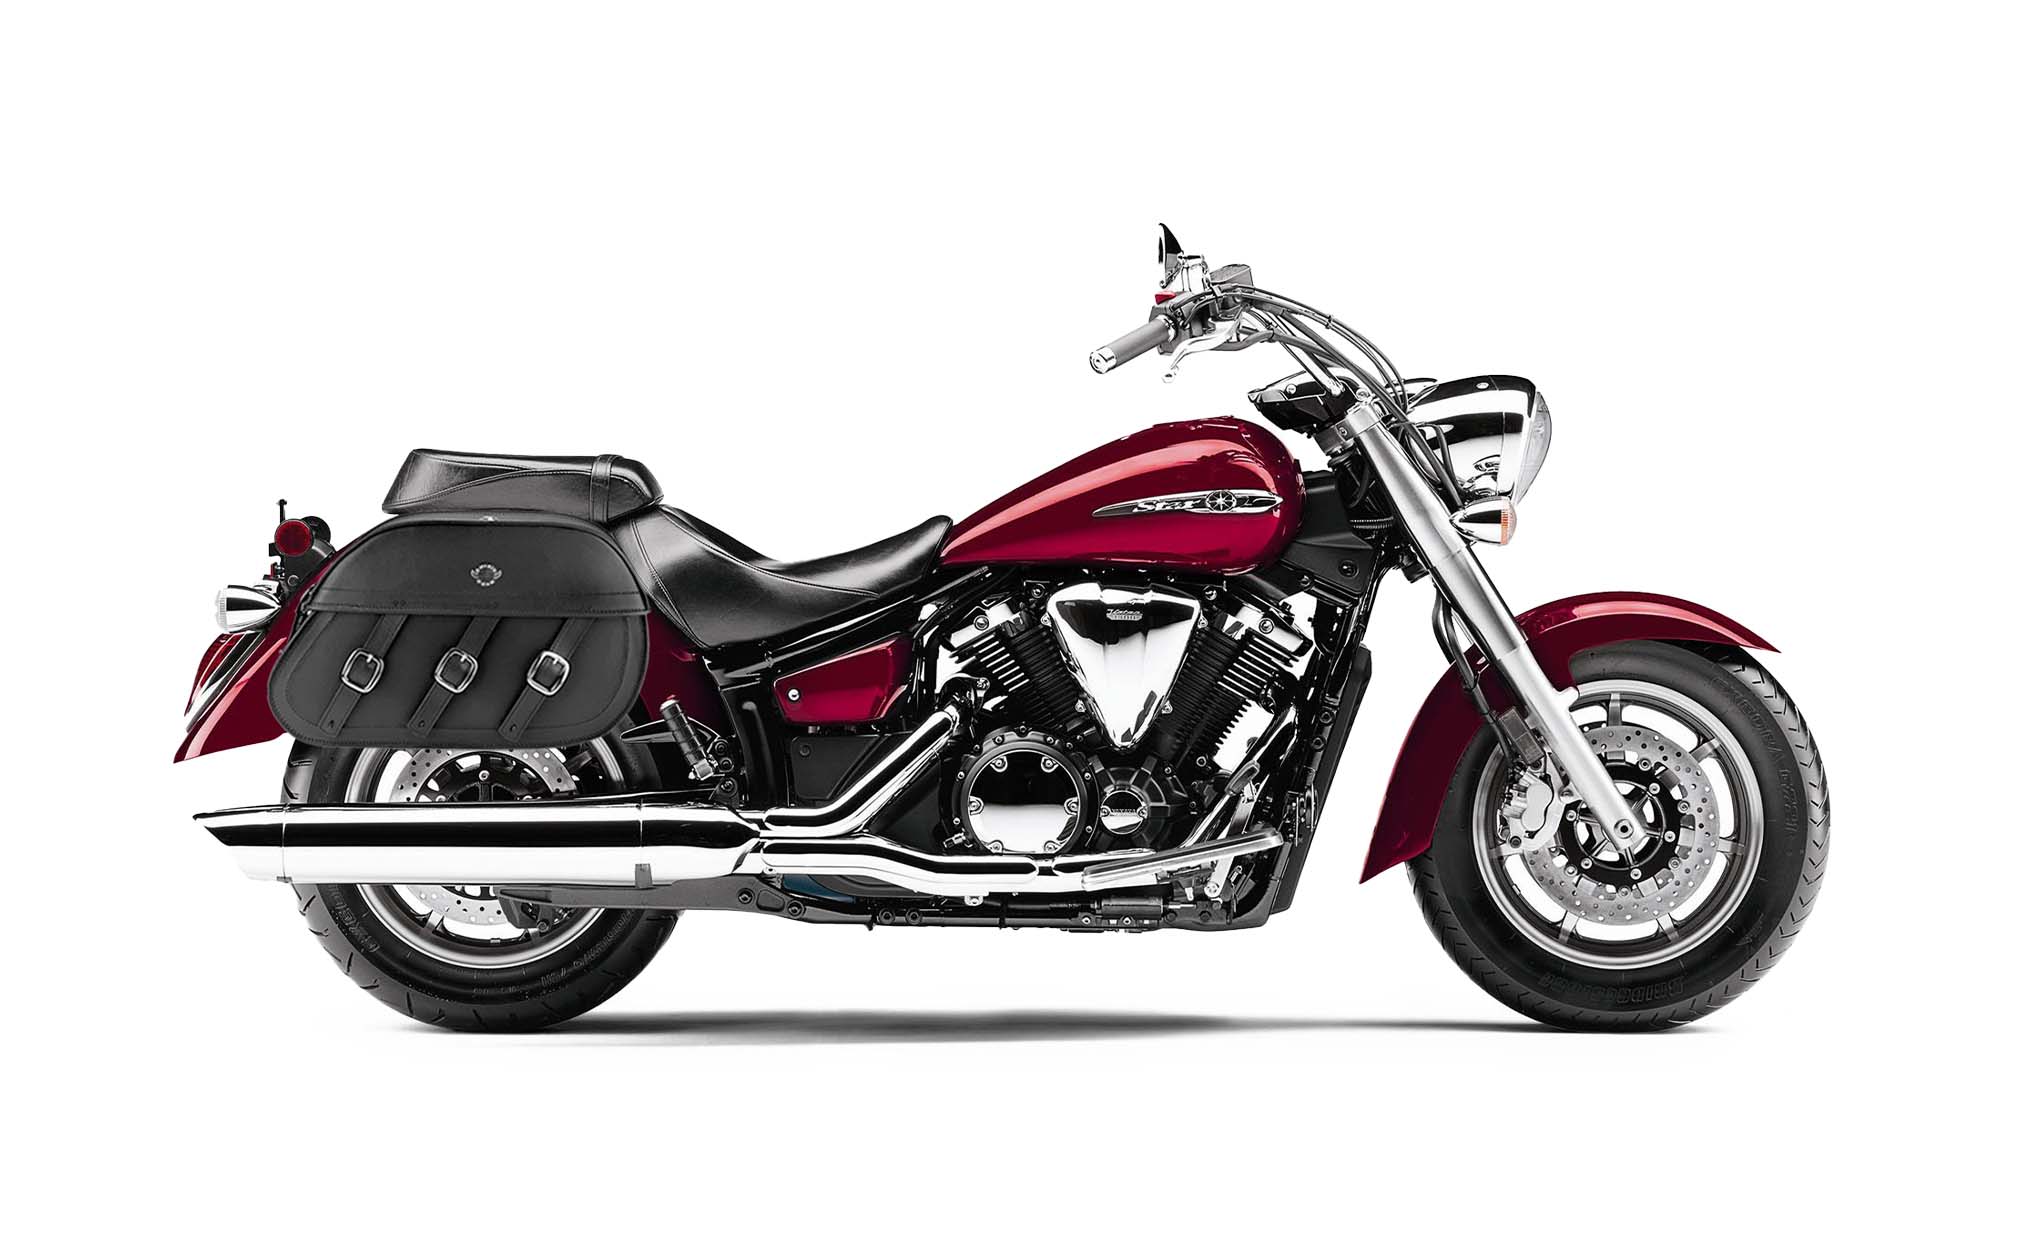 Viking Trianon Extra Large Yamaha V Star 1300 Classic Xvs1300A Leather Motorcycle Saddlebags on Bike Photo @expand